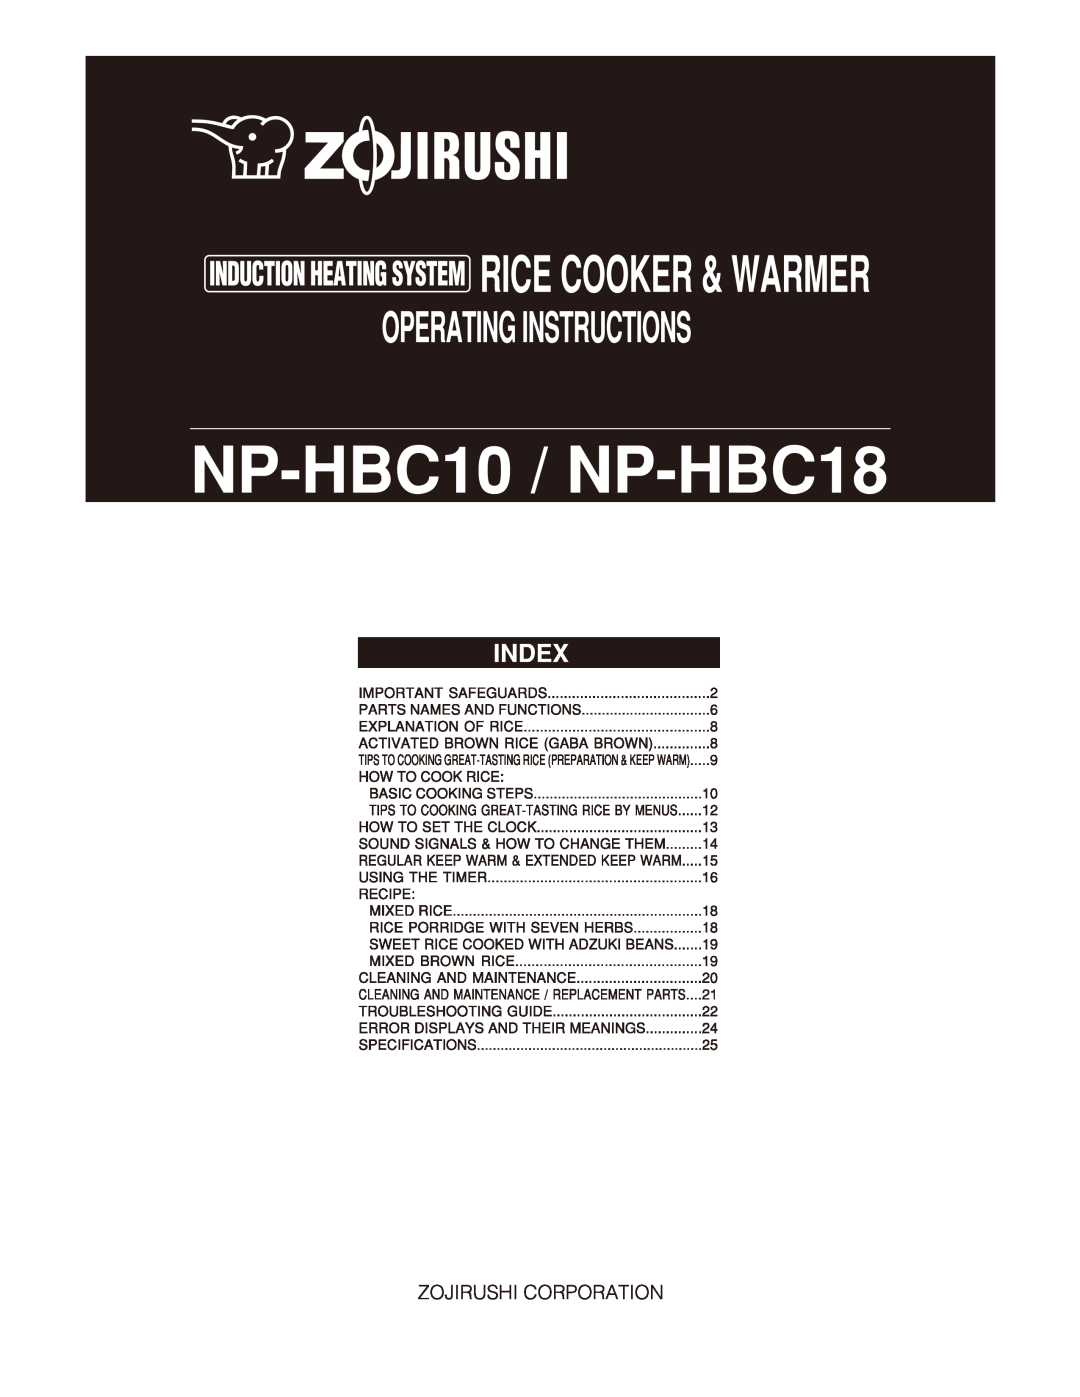 Zojirushi NP-HBC18, NP-HBC10 manual 